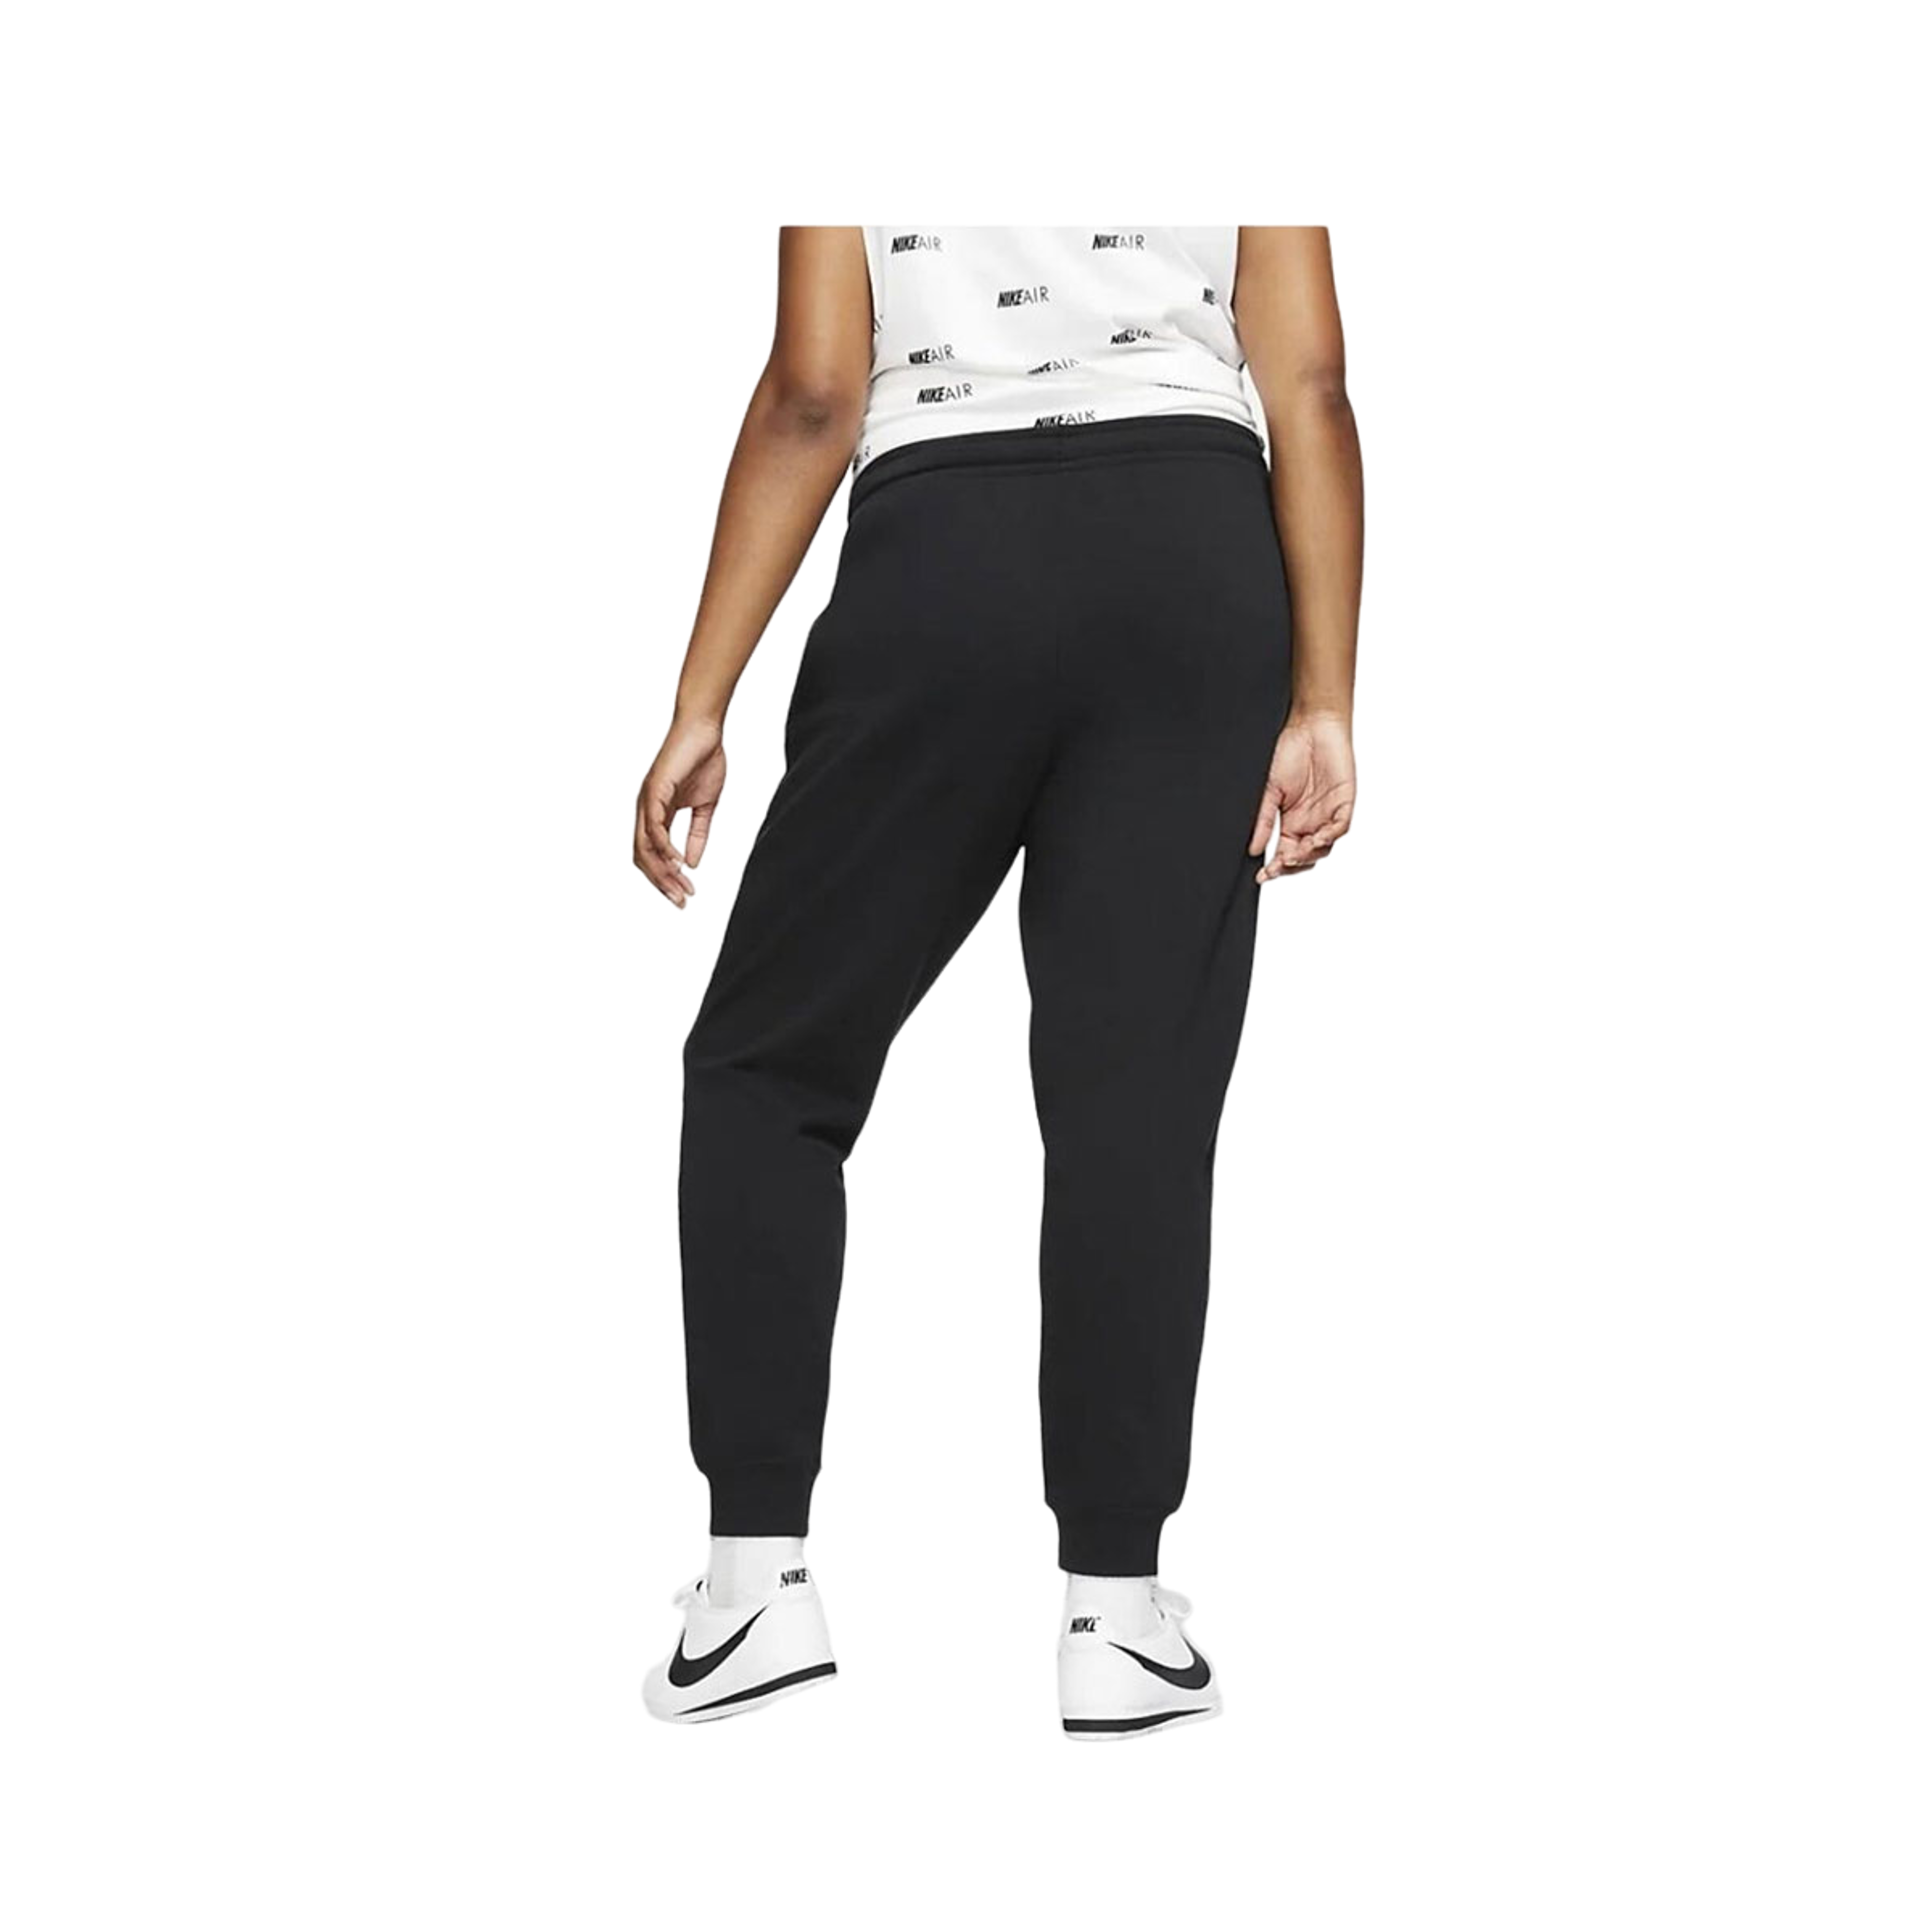 NTWRK - Nike Women's Swoosh Joggers Sweatpants